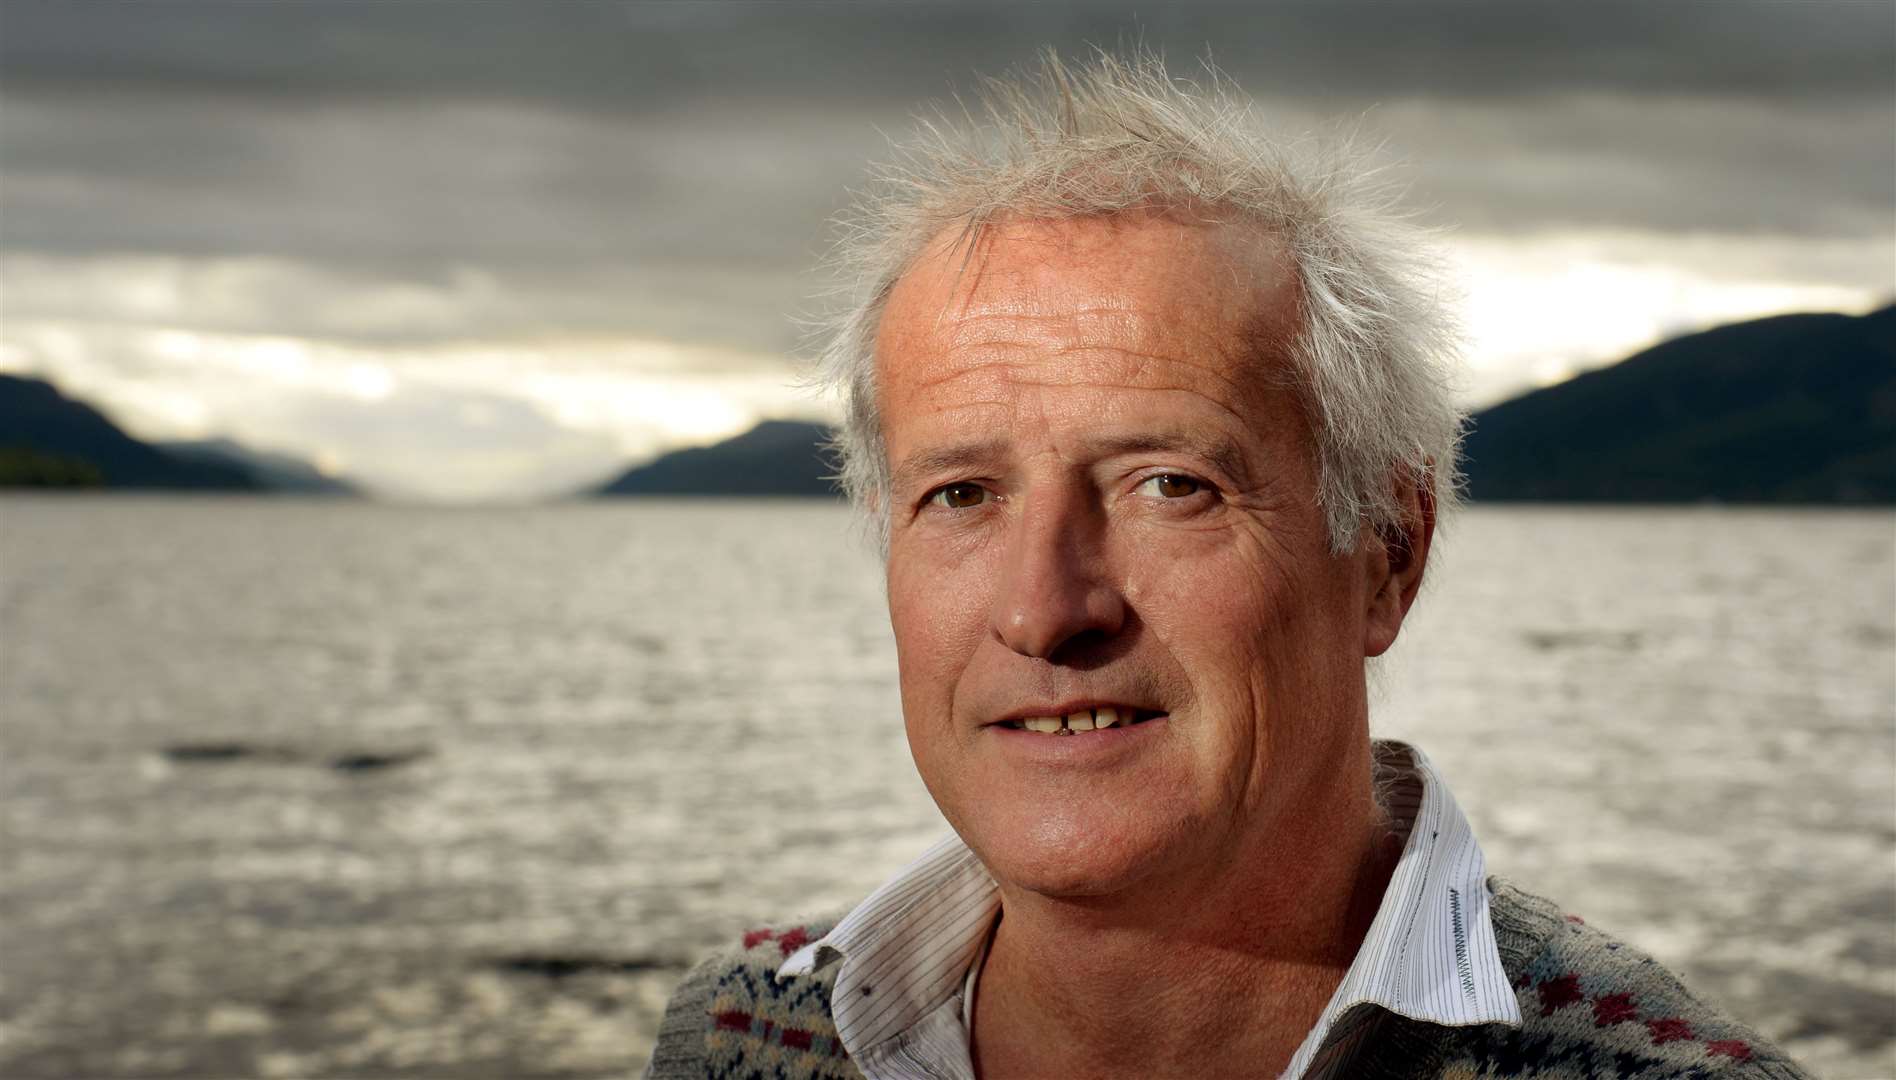 Steve Feltham has been keeping a watchful eye on Loch Ness since 1991.